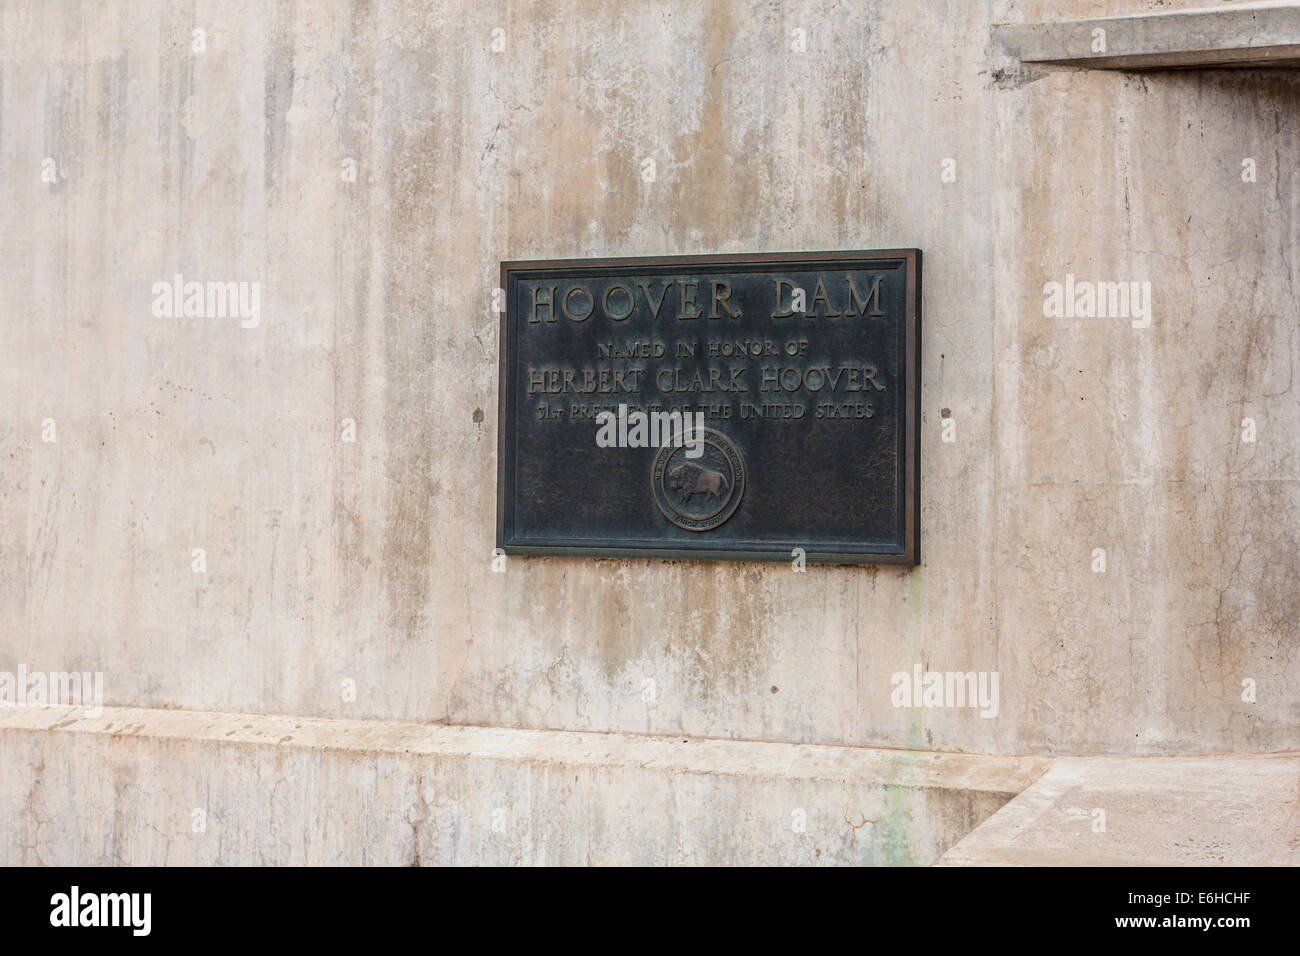 Plakette besagt, dass Hoover Dam zu Ehren von Herbert Clark Hoover, Präsident der Vereinigten Staaten benannt ist Stockfoto